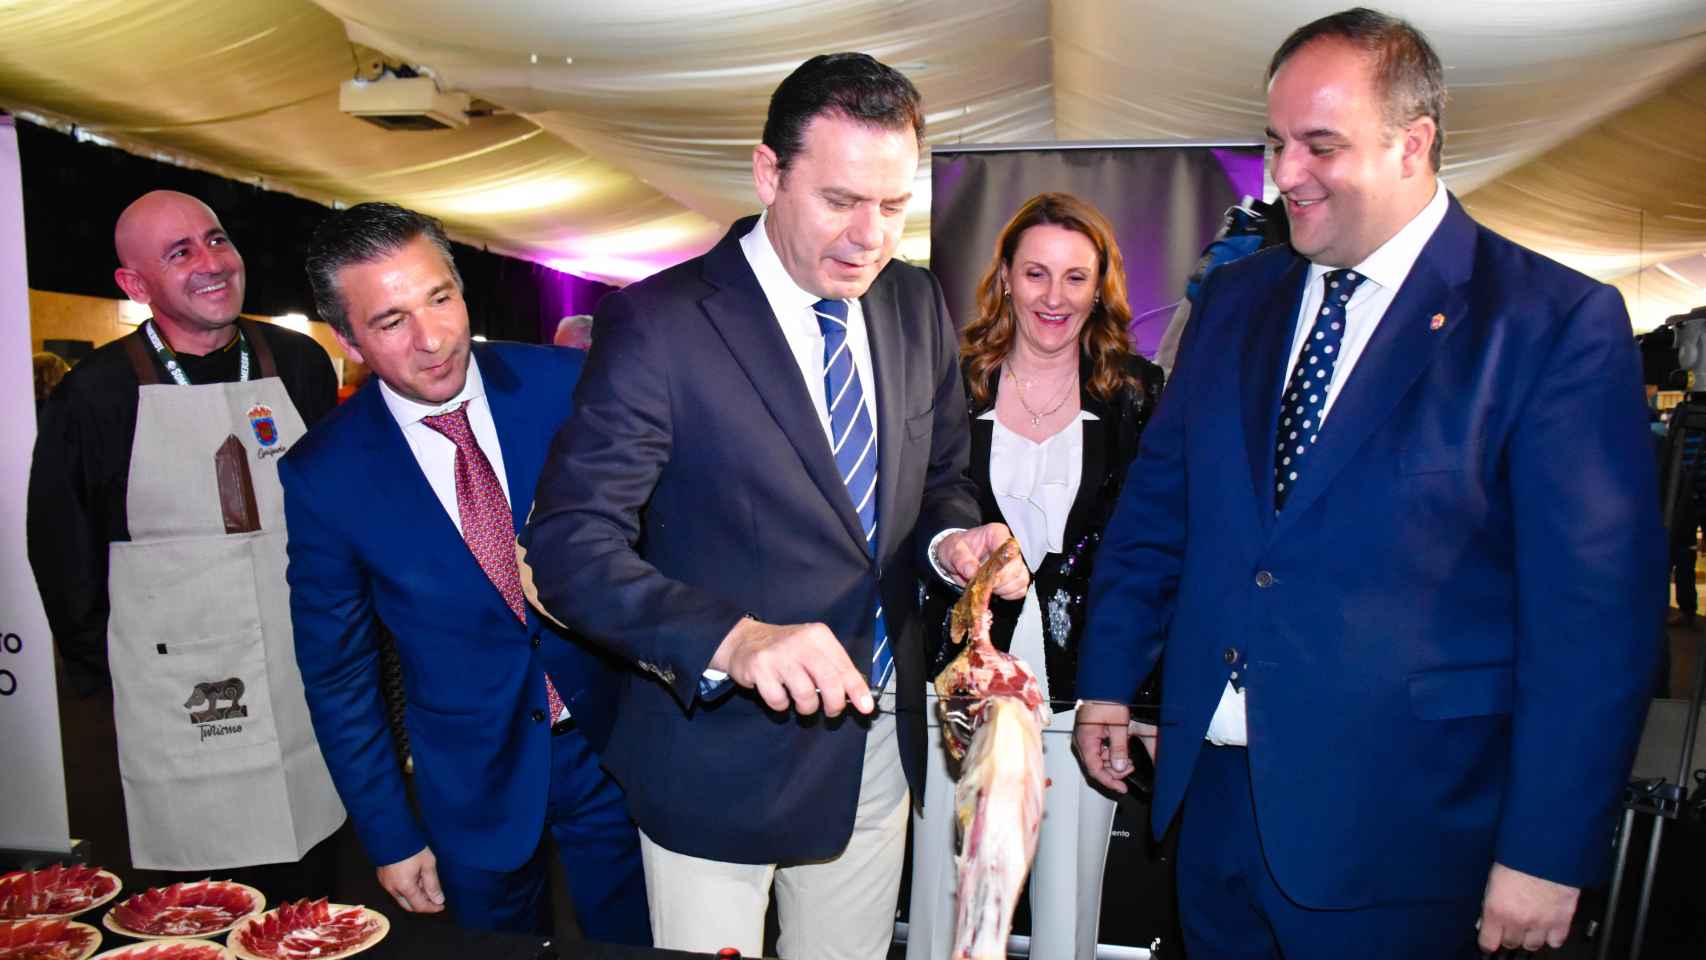 El presidente del PSD, Luís Montenegro, se atreve a cortar jamón en presencia de Rui Ventura y Roberto Martín, en el estand de Guijuelo